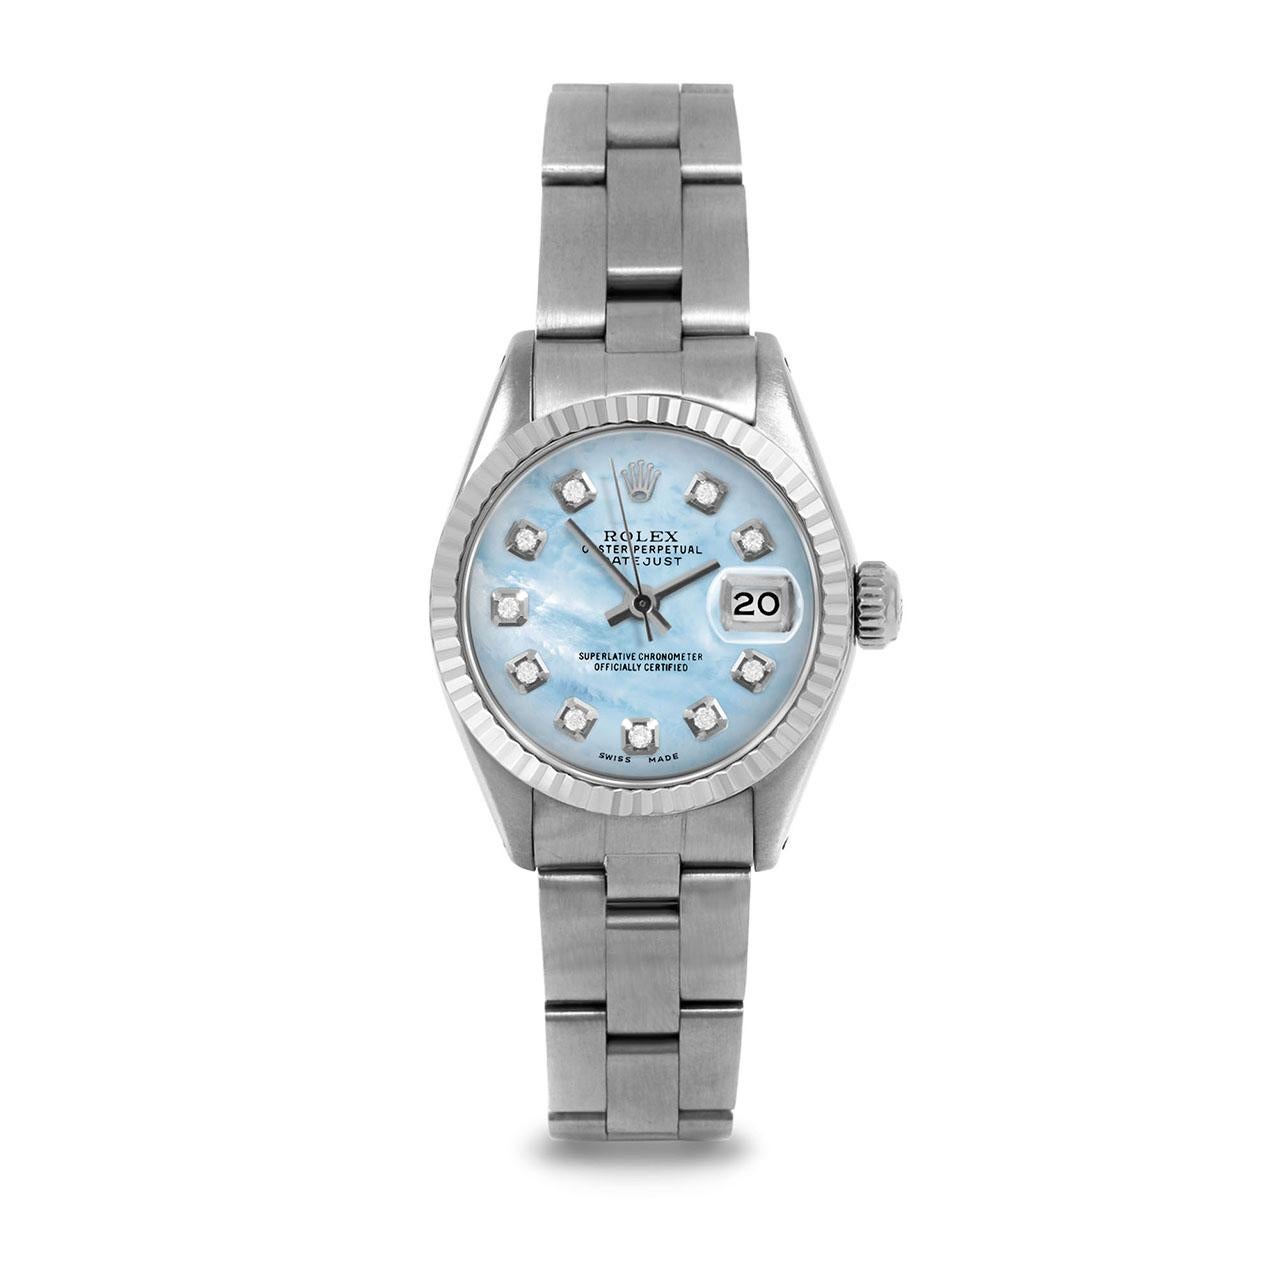 Montre Rolex 6917 26mm Datejust pour femme, cadran bleu clair nacré avec diamants et lunette cannelée sur bracelet Rolex Oyster en acier inoxydable, d'occasion.   

SKU 6917-SS-LBMOP-DIA-AM-FLT-OYS


Marque/Modèle :        Rolex Datejust
Numéro de